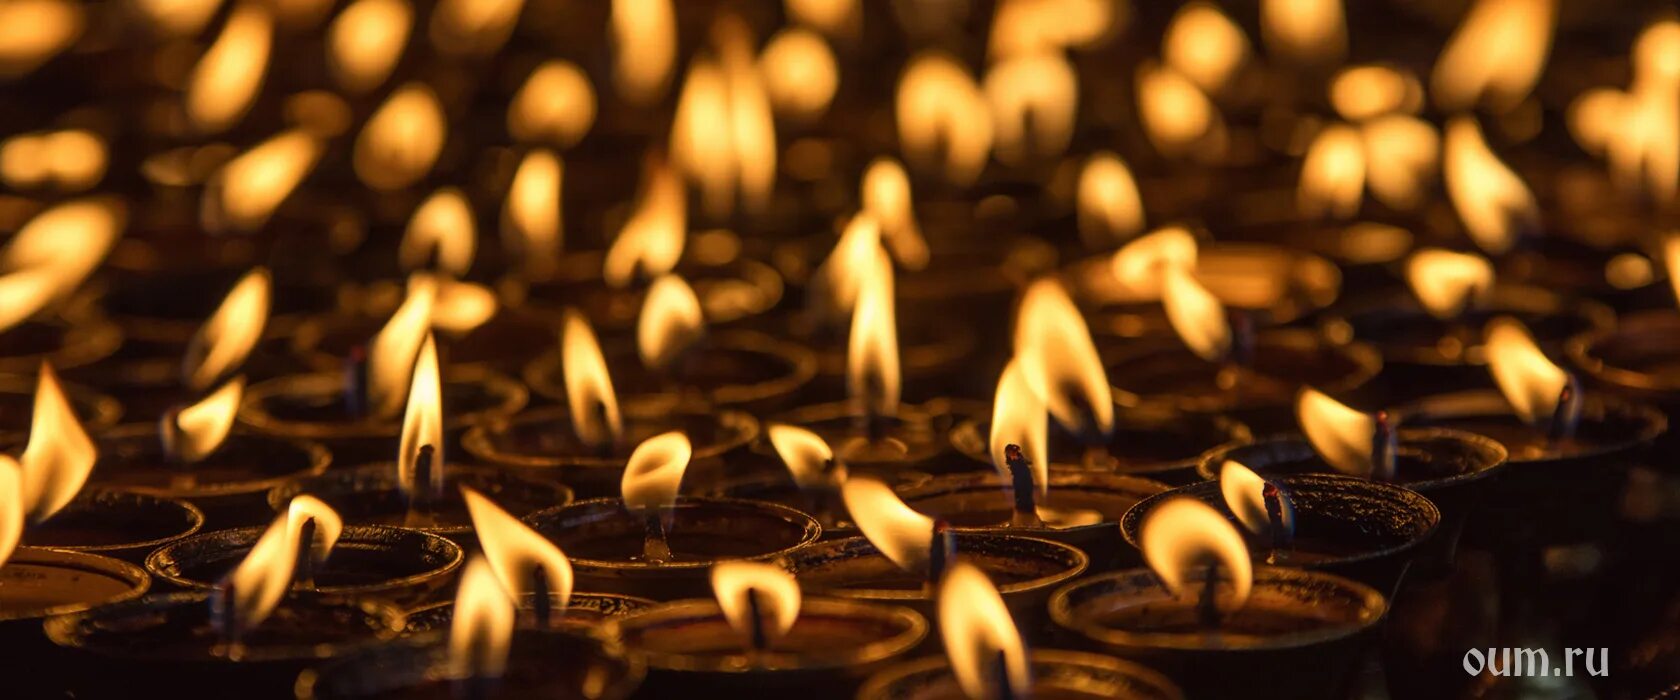 Luminary 1000 свечей. Тысячи свечей. 1000 Свечей. Свечи Индия. Свет в тысячу свечей.